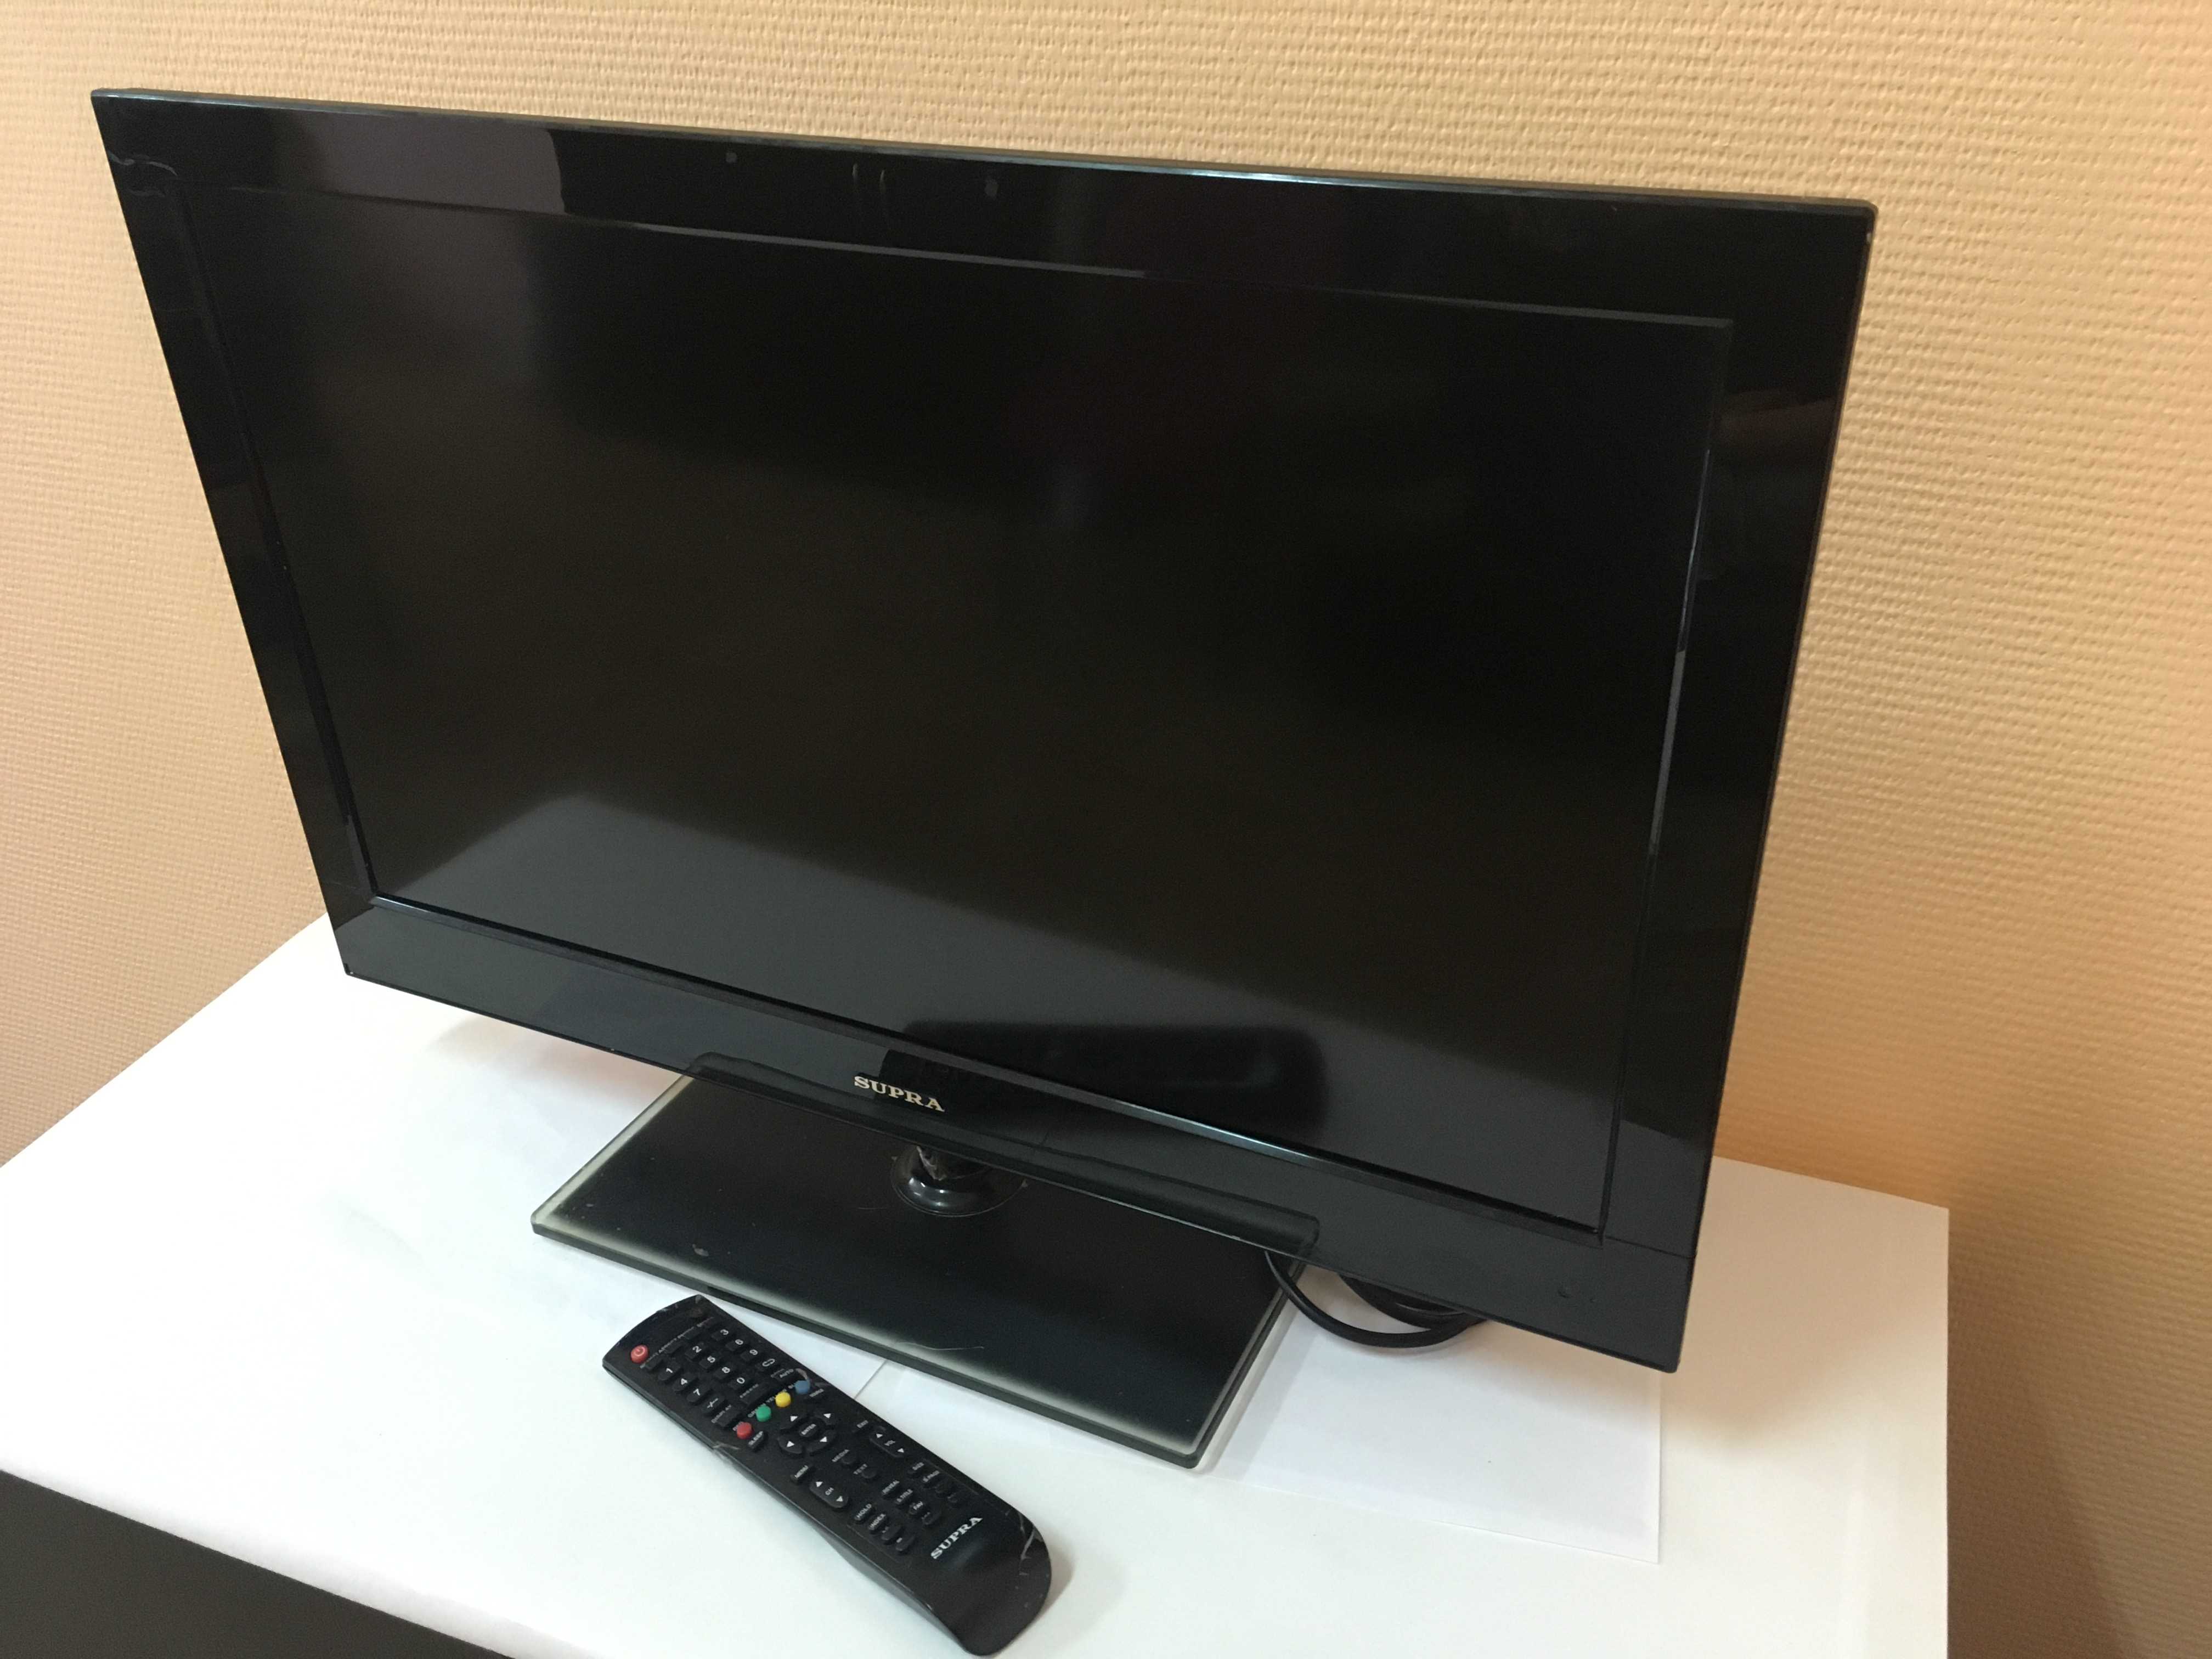 Телевизоры supra — зимняя распродажа 2021, г. москва